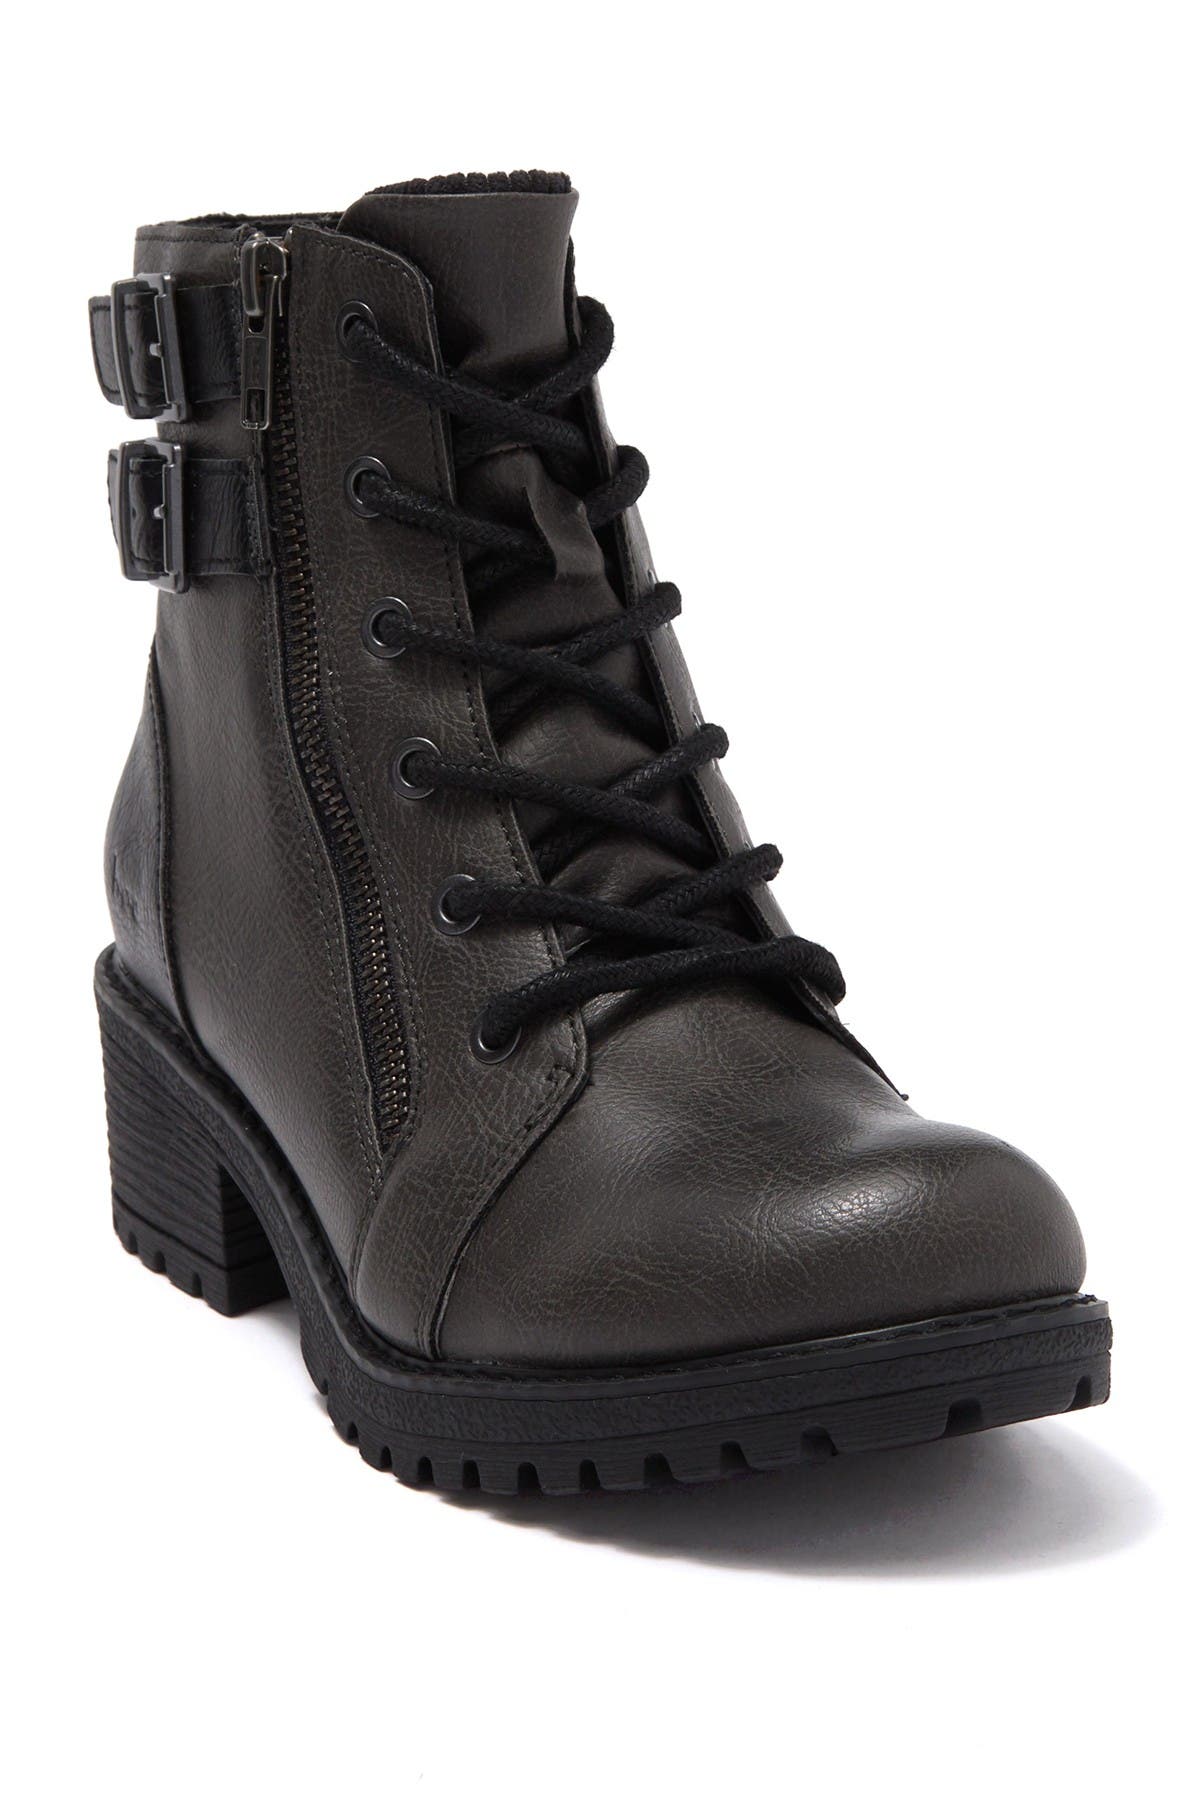 boc combat boots